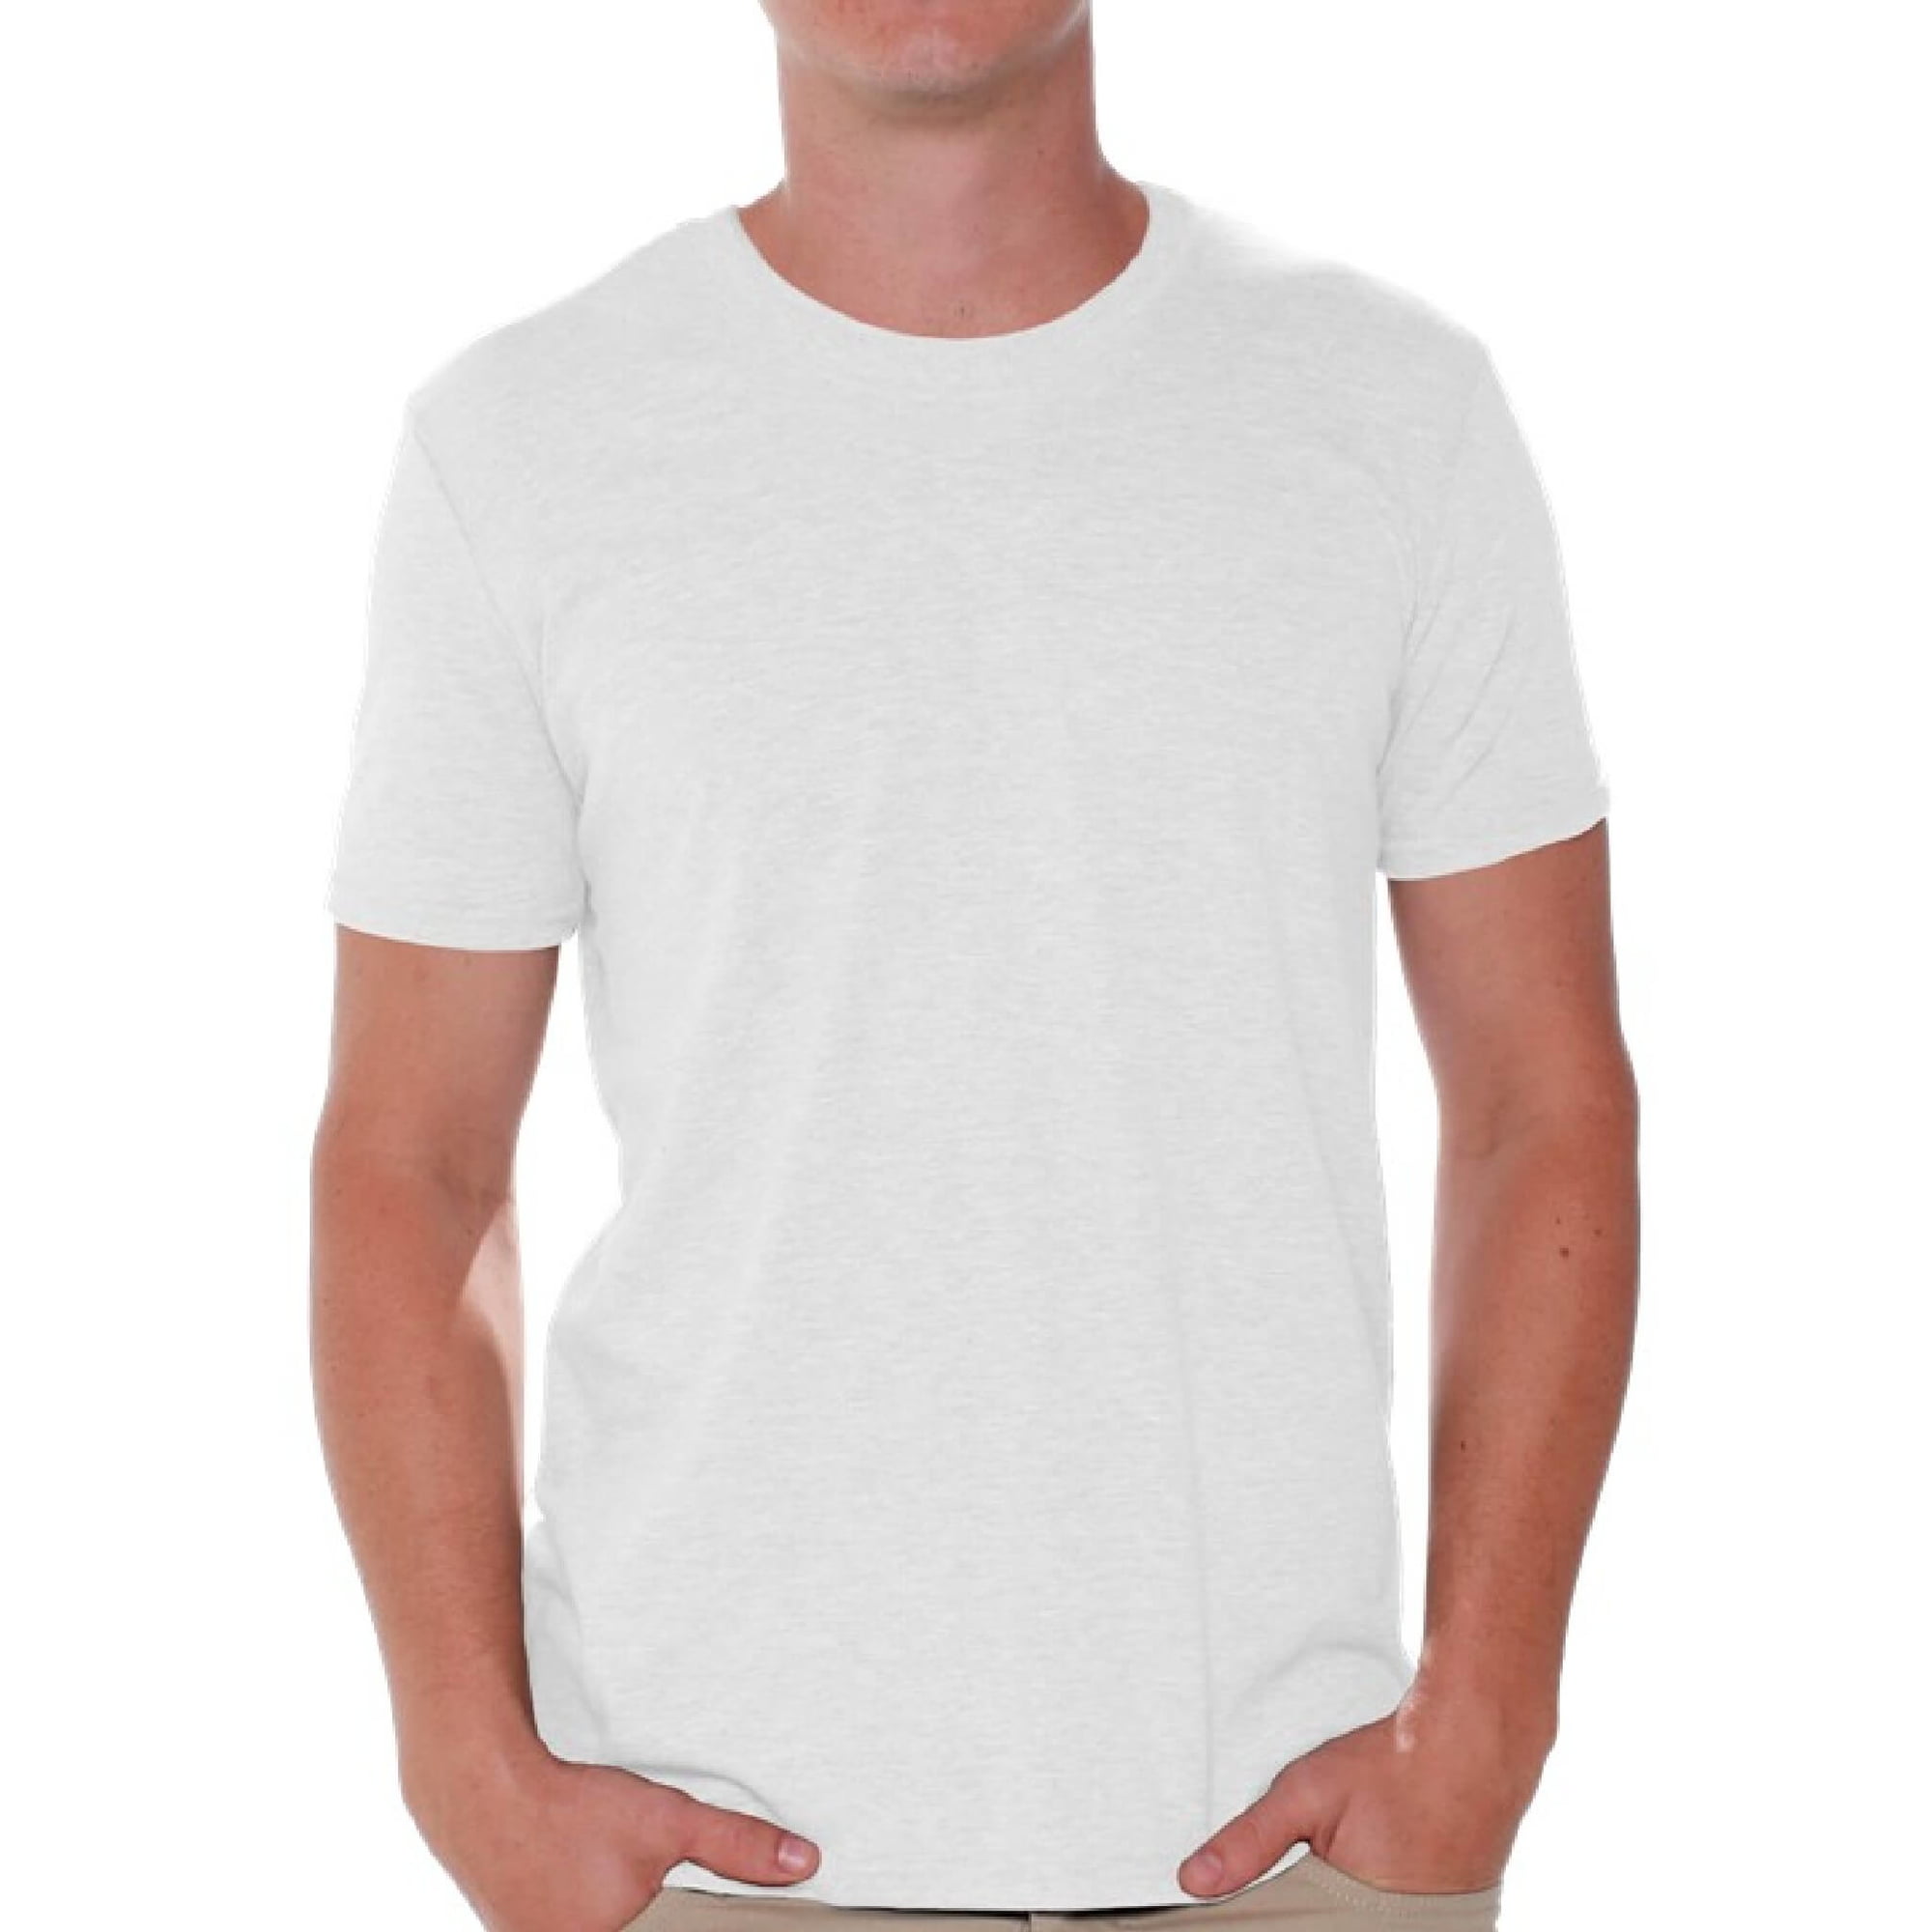 nærme sig bungee jump Jeg er stolt Gildan Men T-Shirts Value Pack White Shirts for Men - Single OR Pack of 6  OR Pack of 12 Shirts for Men Gildan T-shirts for Men T-shirt Casual Shirt  Basic Shirts -